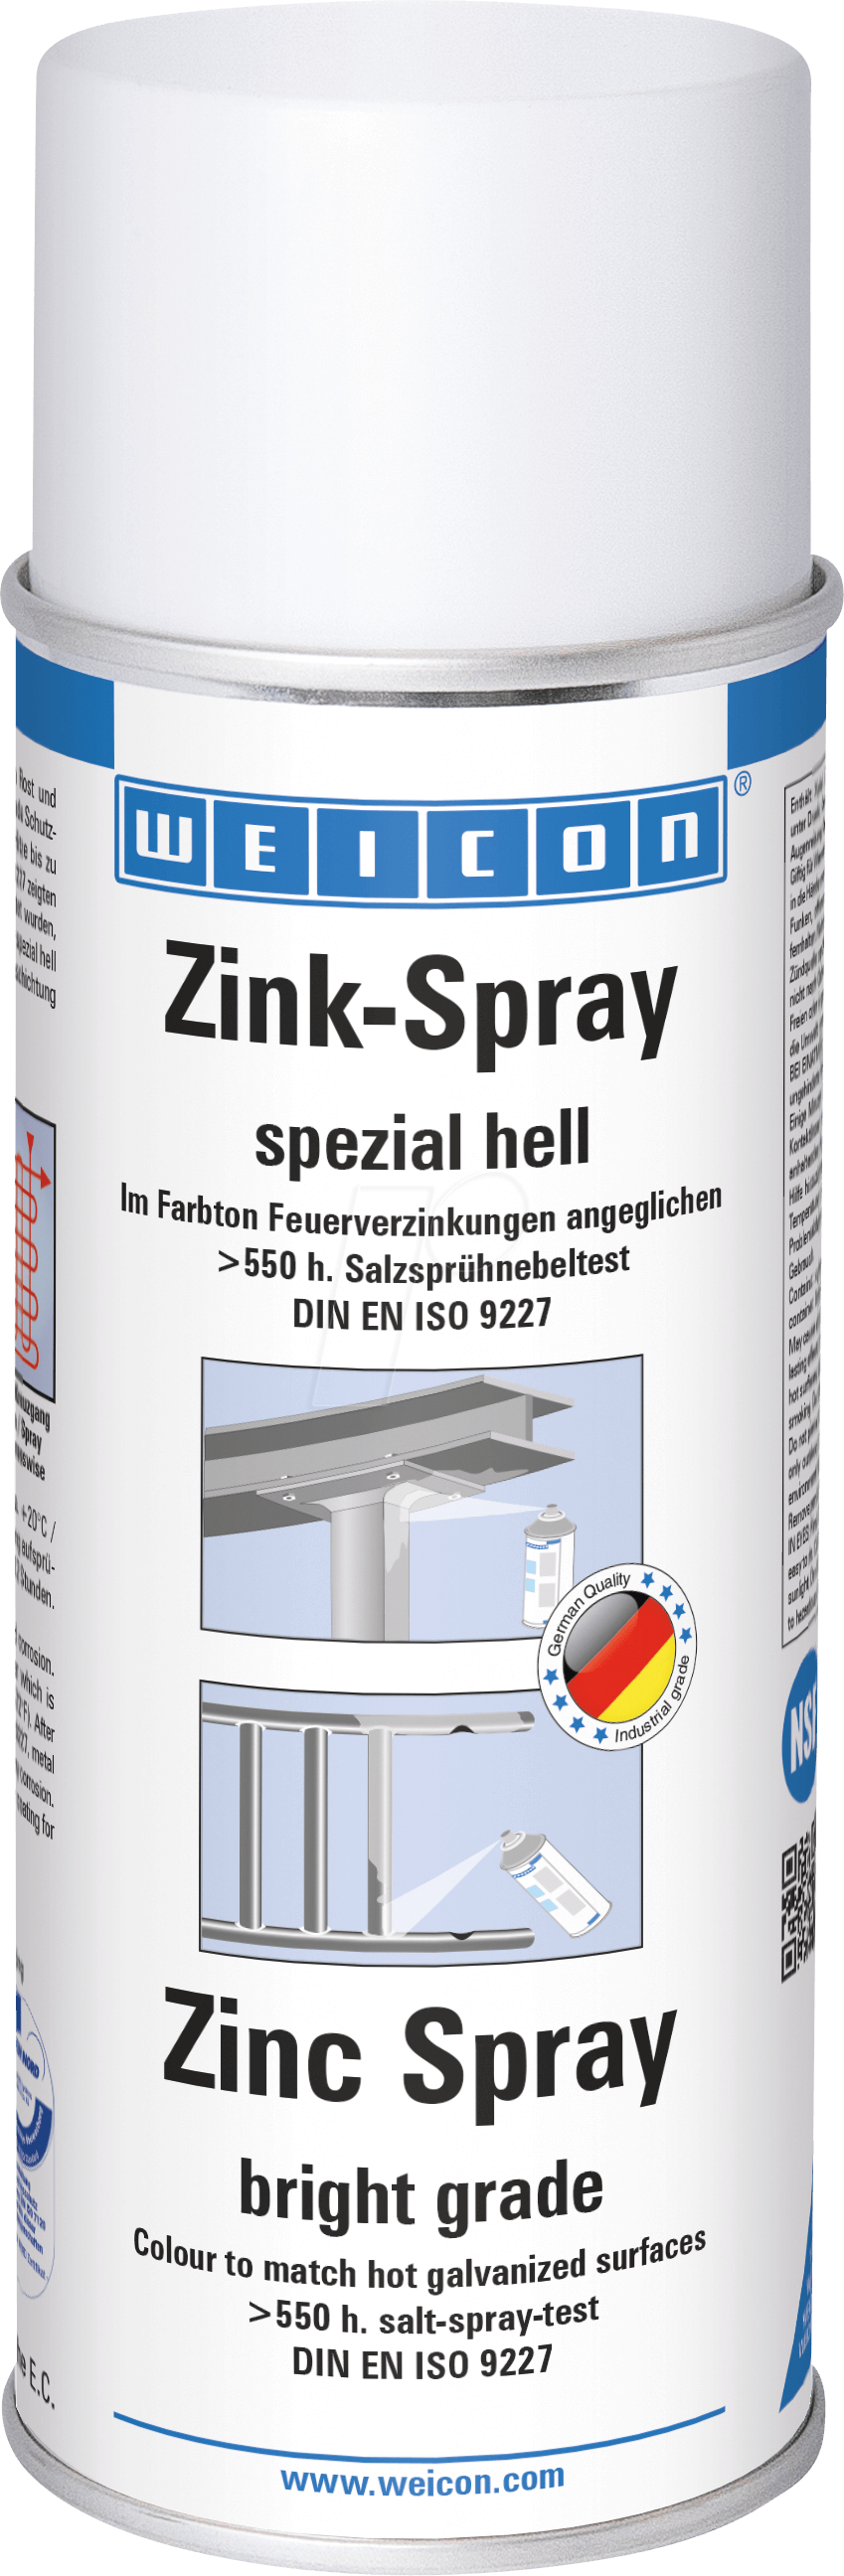 WEICON 11001400 - Zink-Spray, spezial hell, Korrosionsschutz, 400 ml